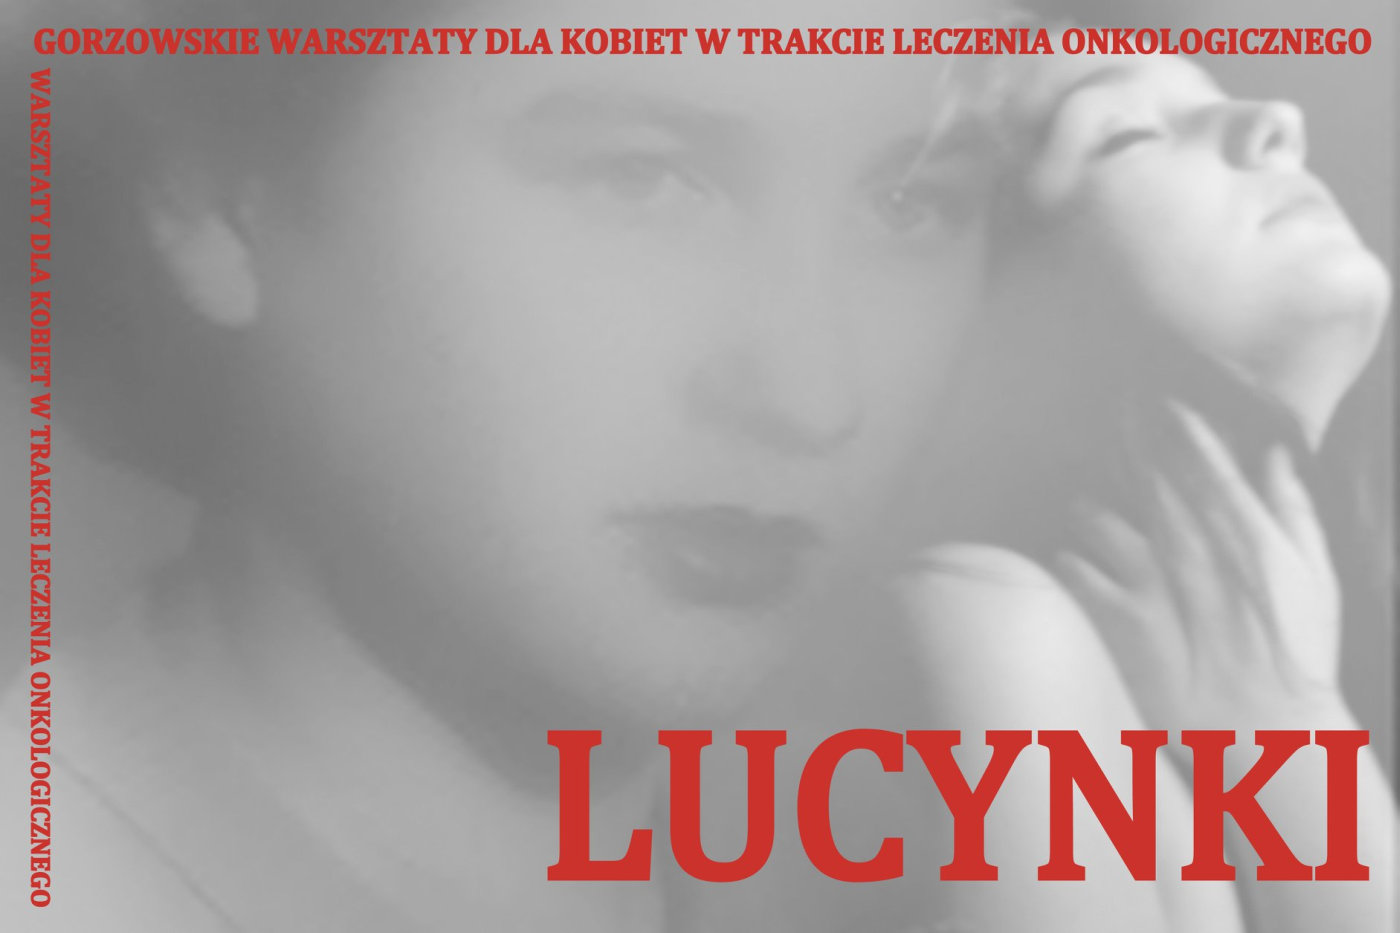 Grafika wydarzenia „Lucynki” – zajęcia z rozwoju osobistego